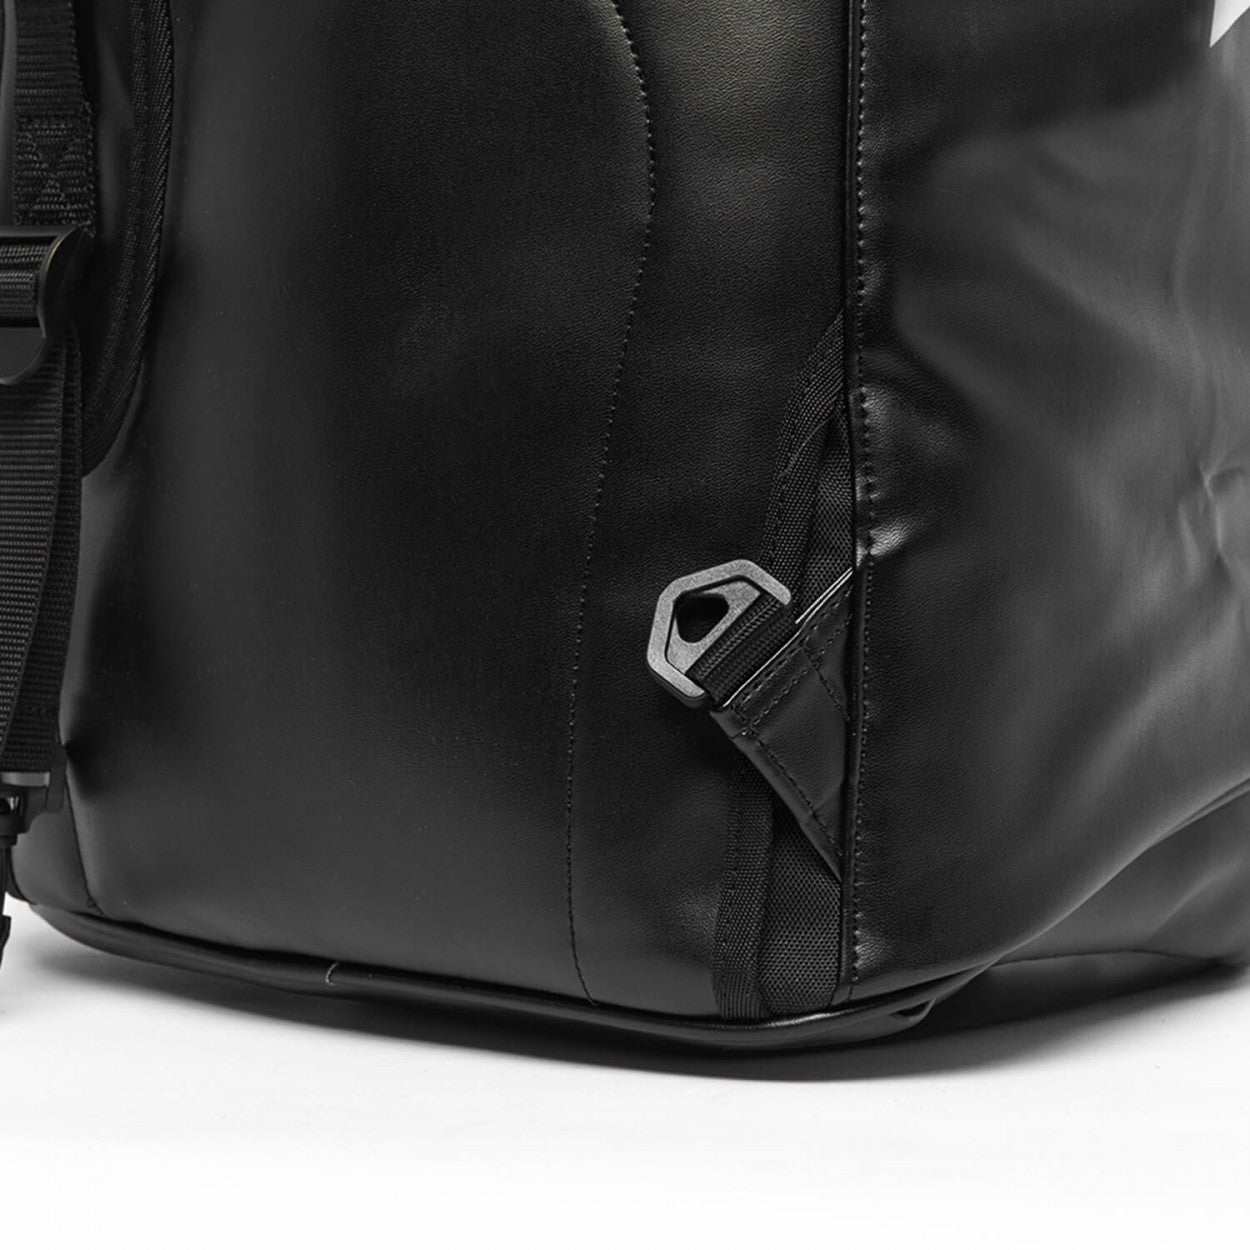 Αθλητική Τσάντα adidas 3 IN 1 TEAMBAG,  Μαύρο/Χρυσαφί